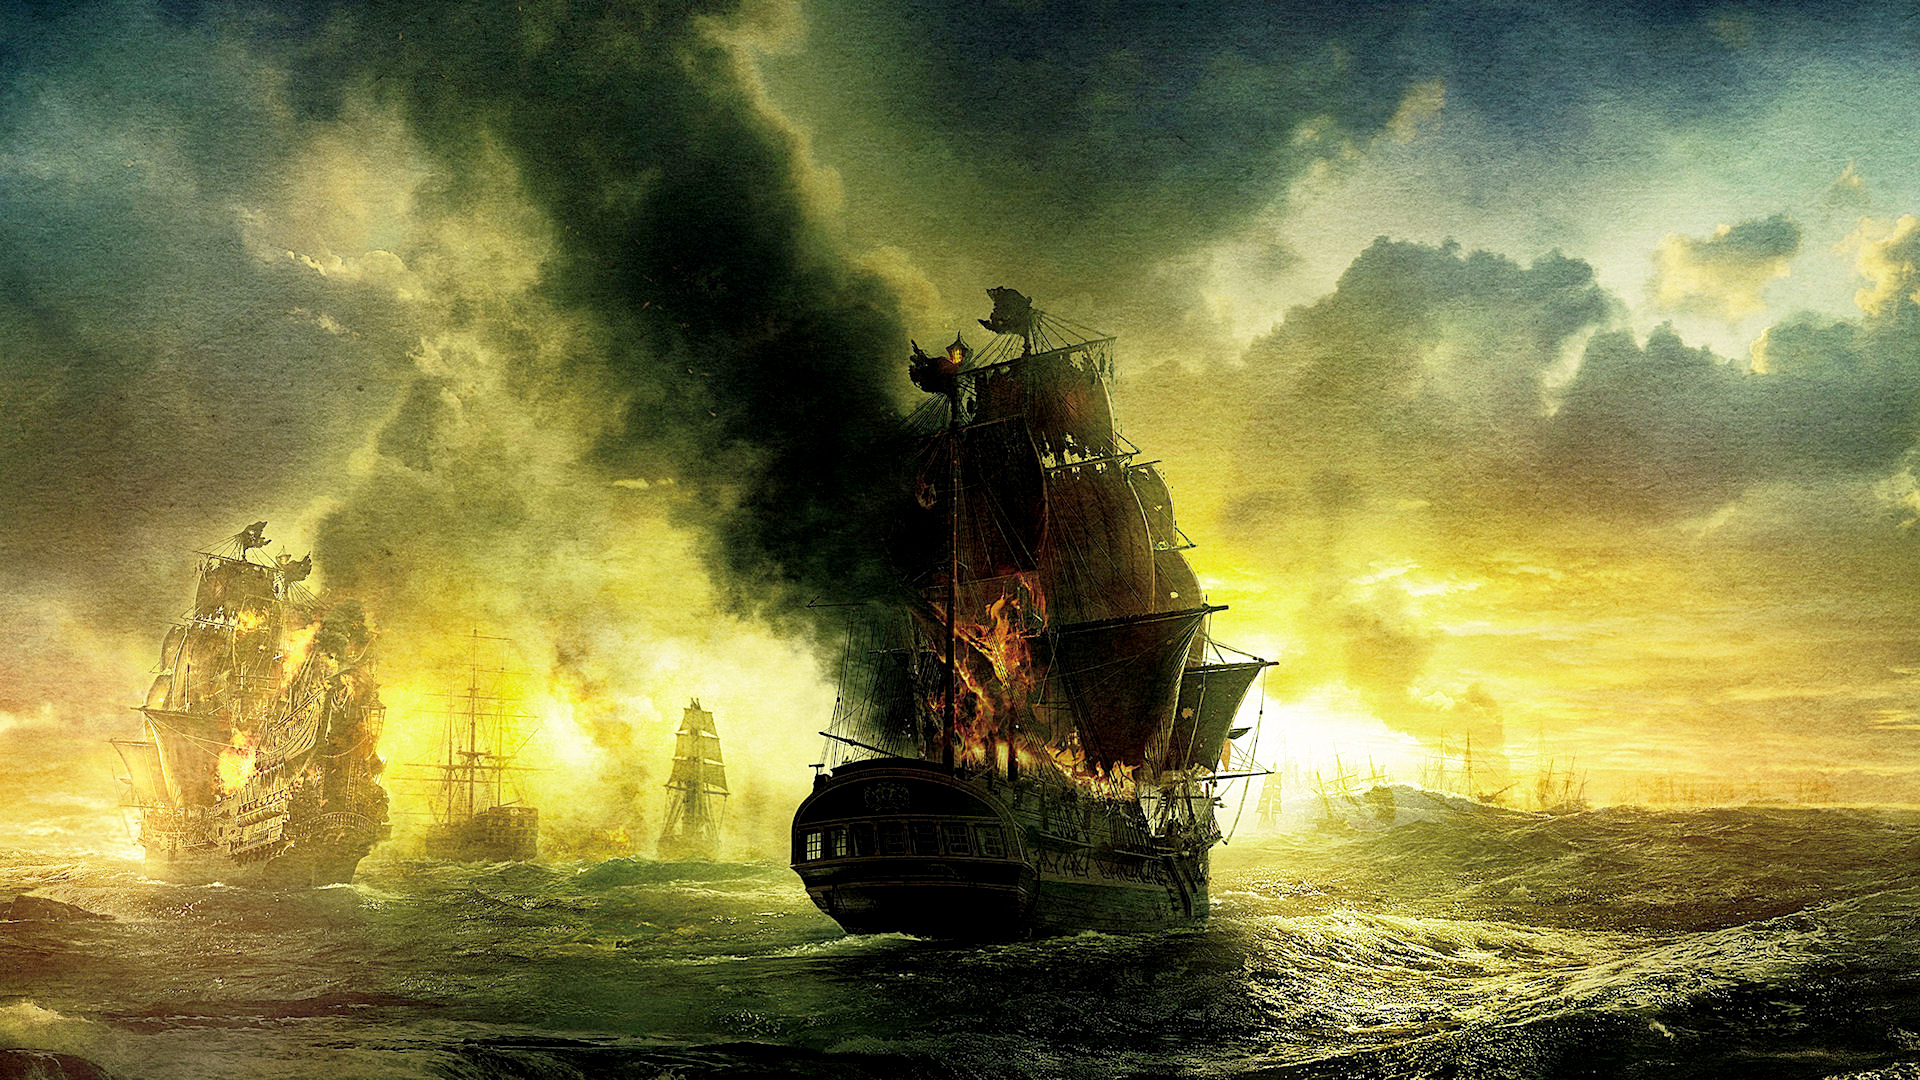 Pirates of the Caribbean: On Stranger Tides Art